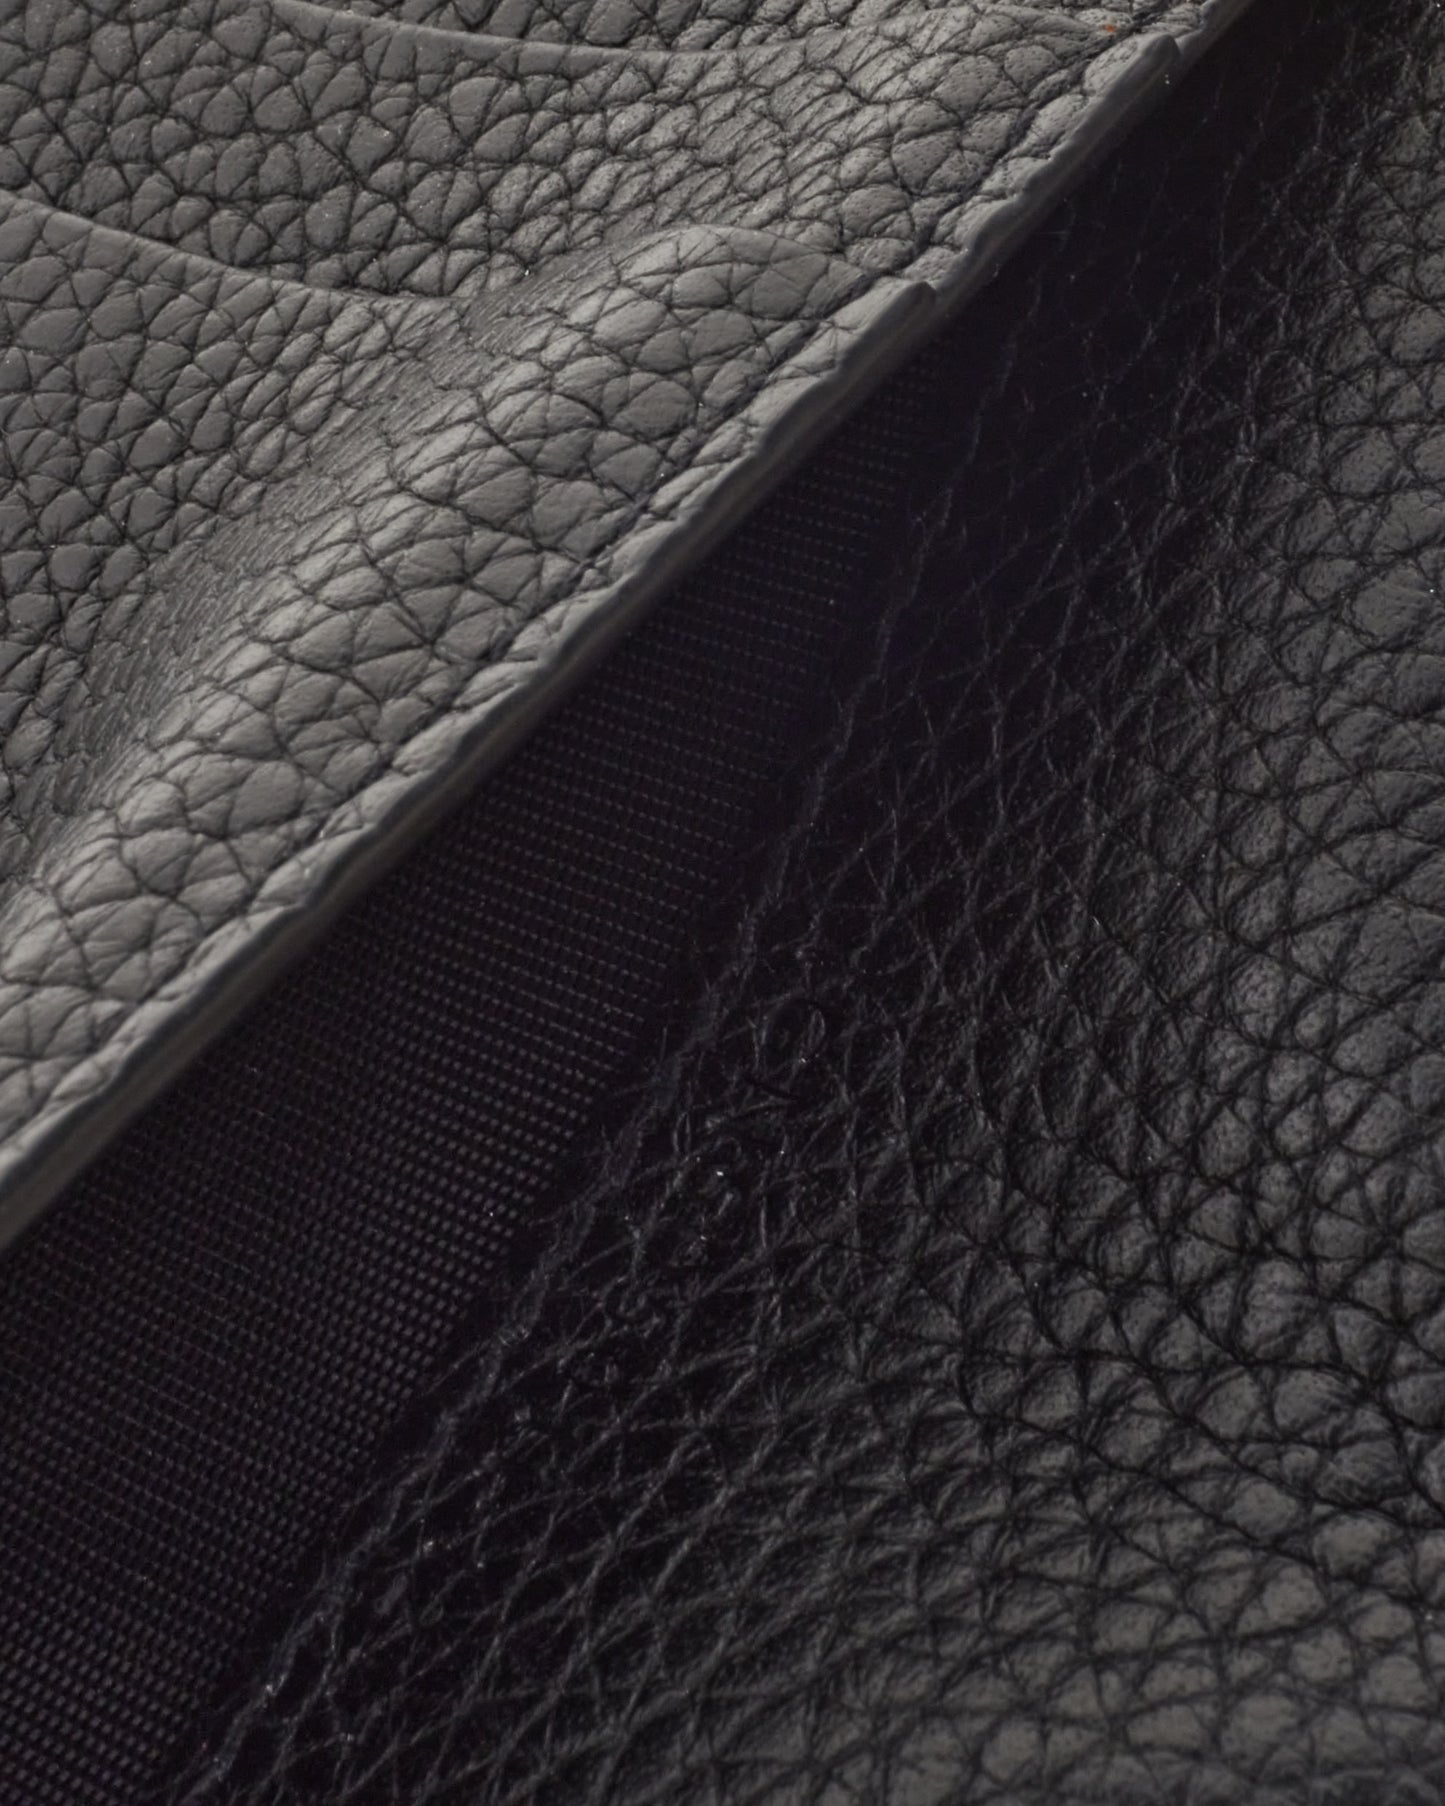 Saint Laurent Black Leather "Sac Du Jour" Compact Wallet